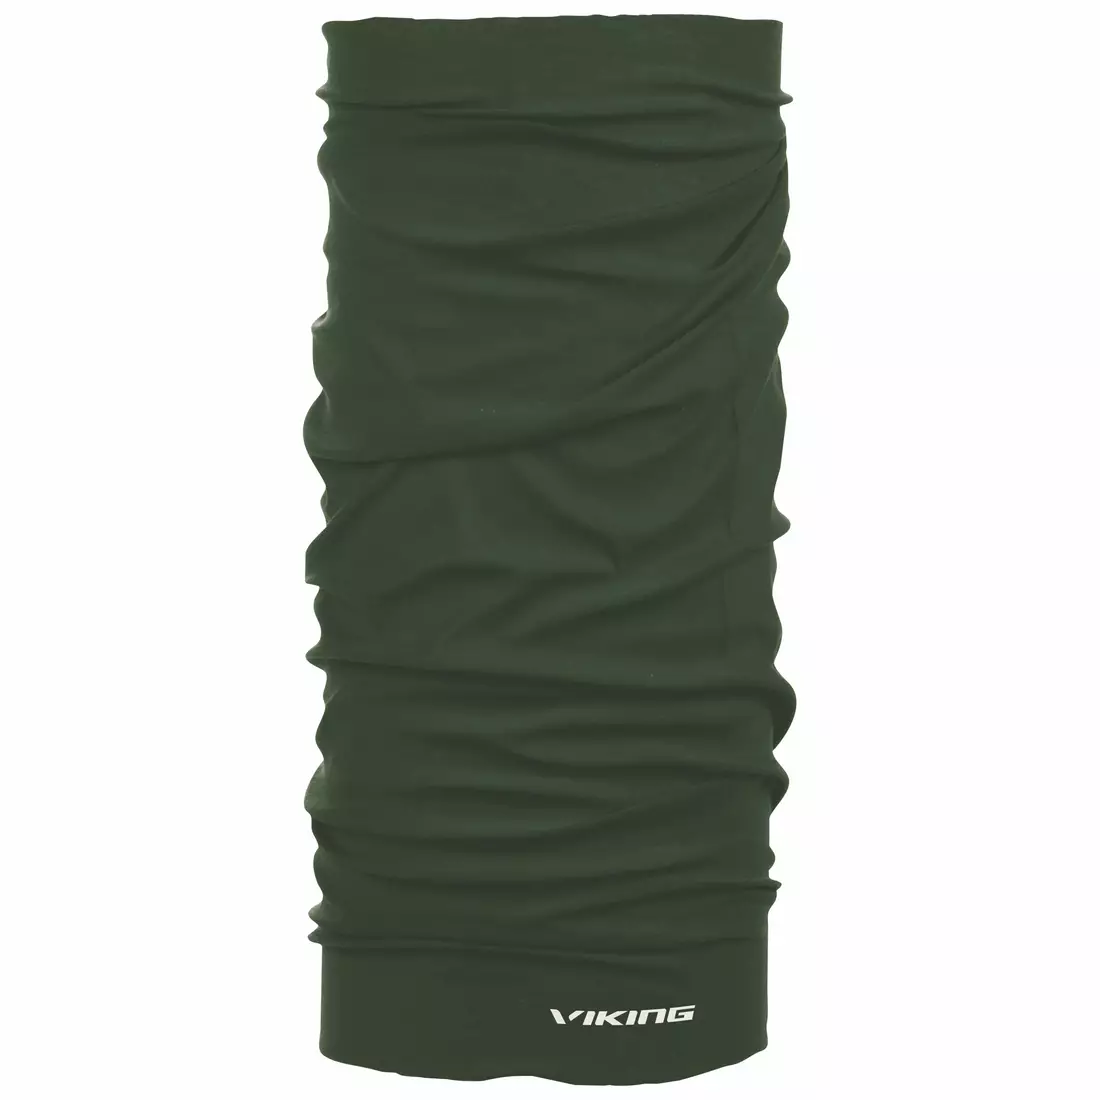 VIKING multifunctional scarf 1214  Regular green